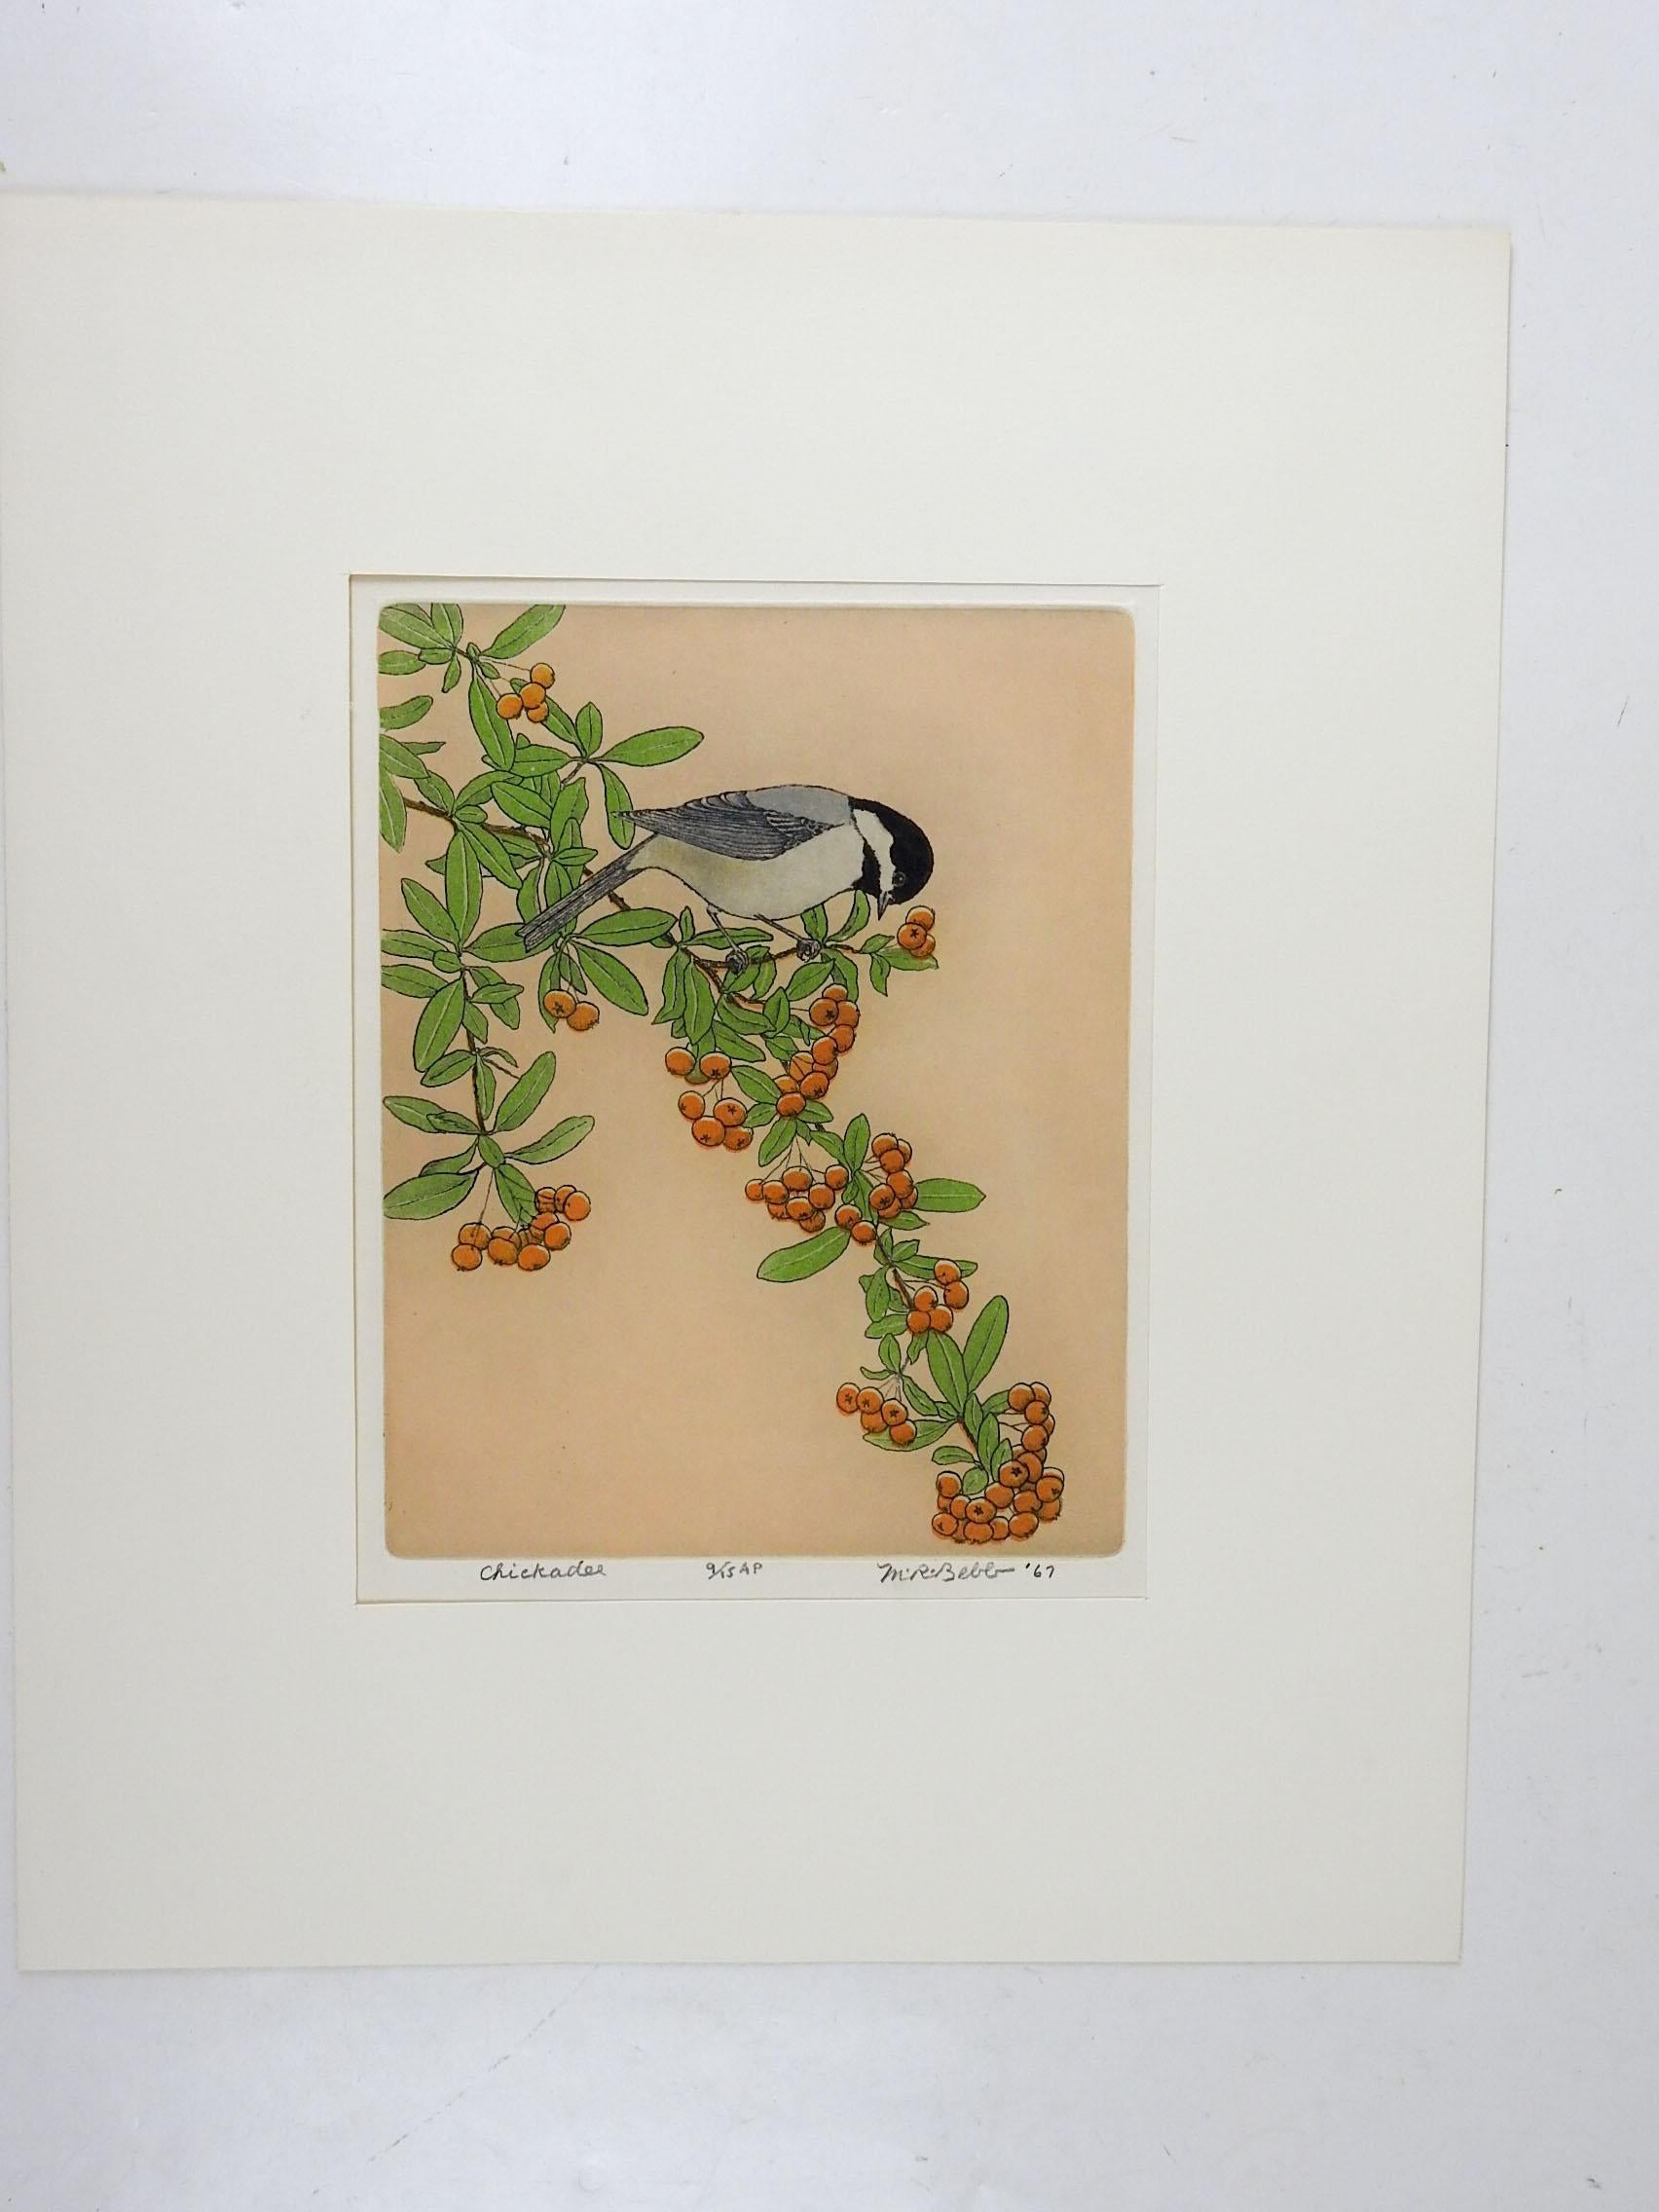 1967 Maurice R. Bebbs (1891-1985), farbige Aquatintaradierung auf Papier. Signiert, betitelt Chickadee, nummeriert 9/15 artist proof in Bleistift am unteren Rand. Ungerahmt, in einem gefalteten Passepartout aus Karton, Öffnungsgröße 7,7,5